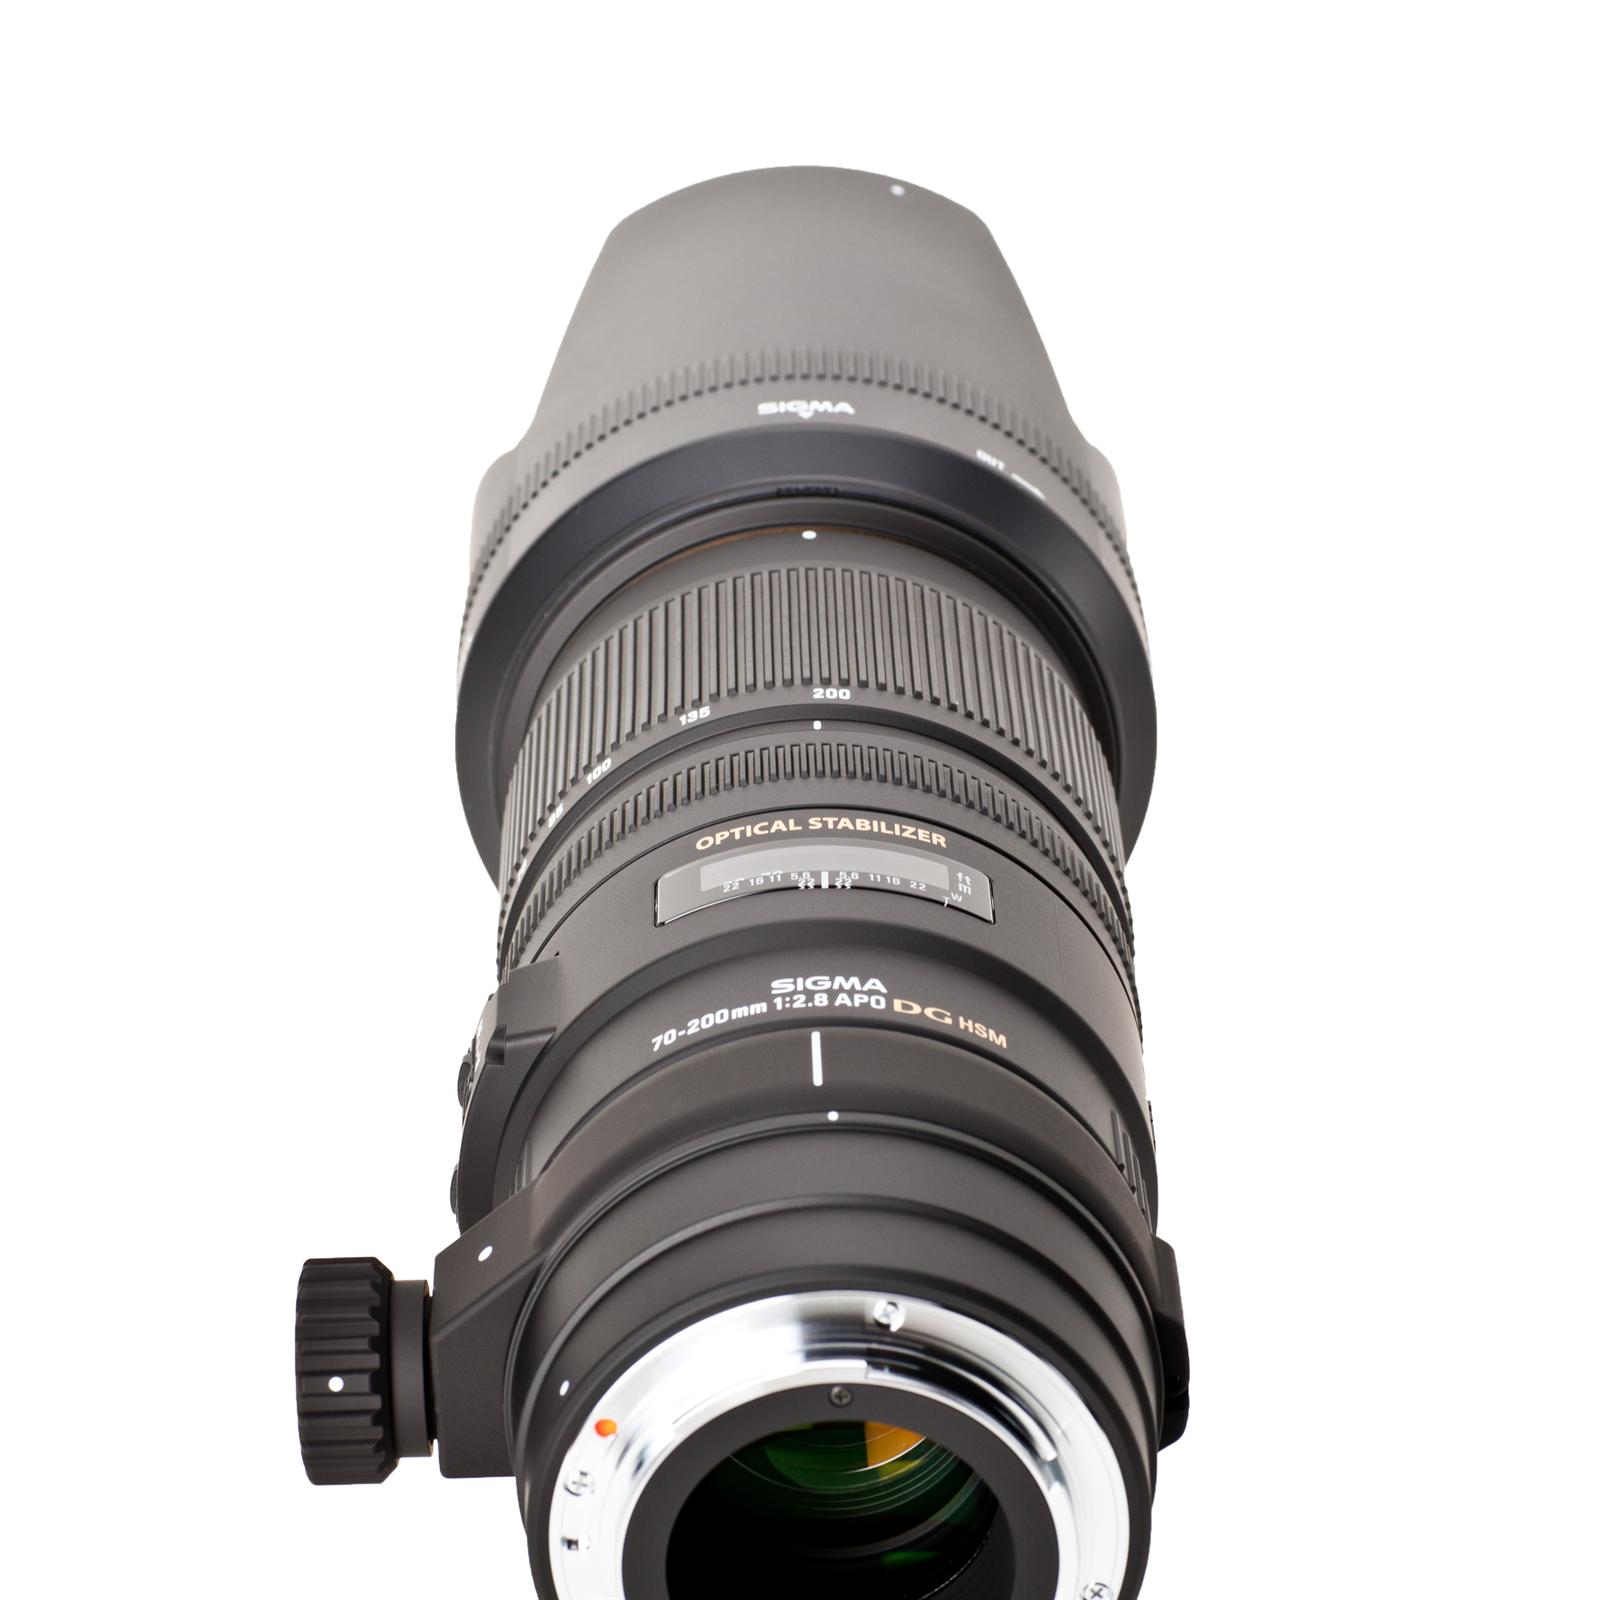 Sigma 70-200 mm f2.8 APO EX DG OS HSM hochwertiges Zoomobjektiv für